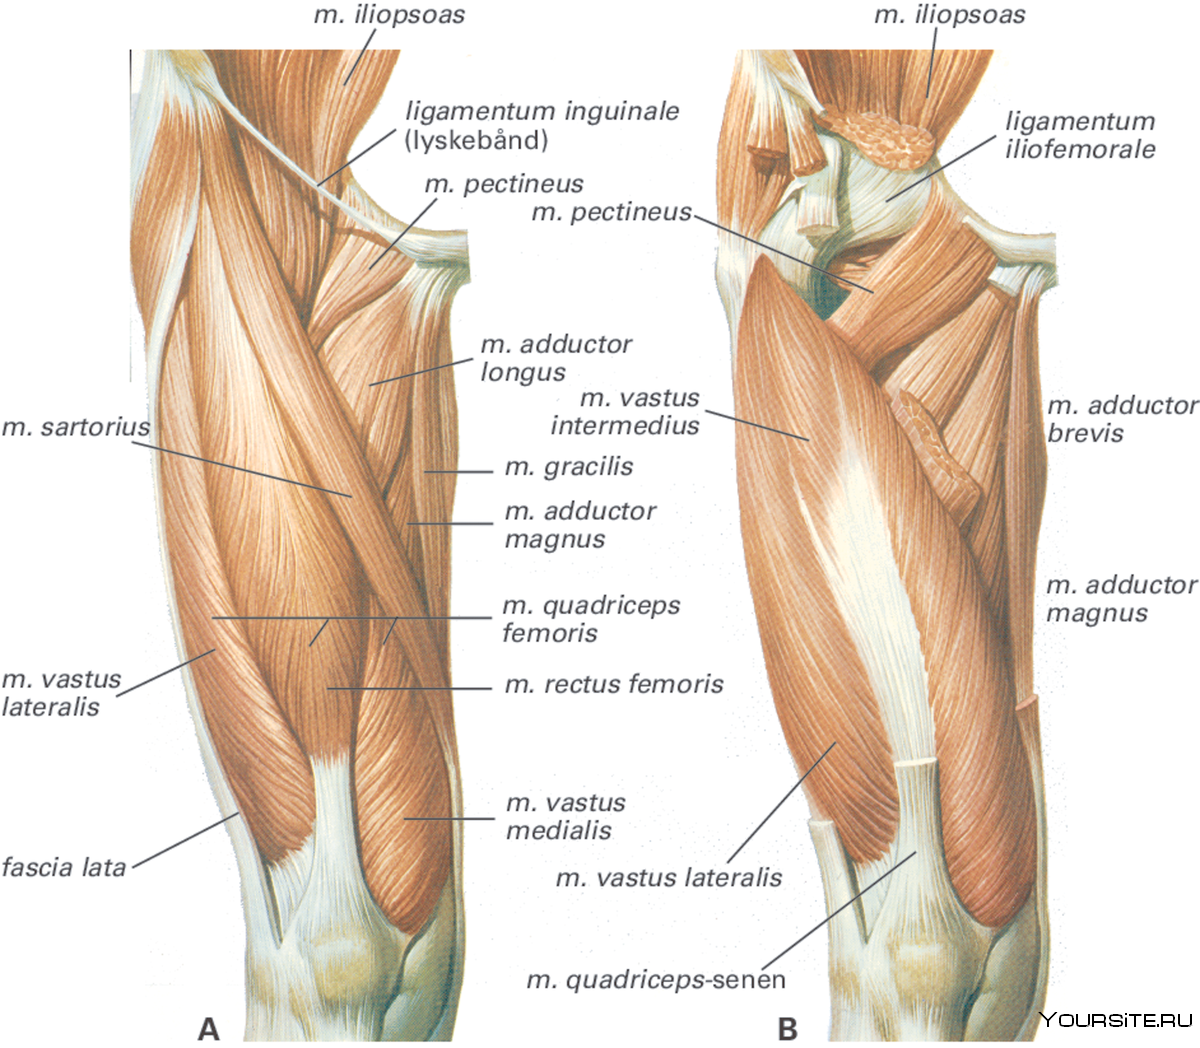 Четырехглавая мышца бедра анатомия функции